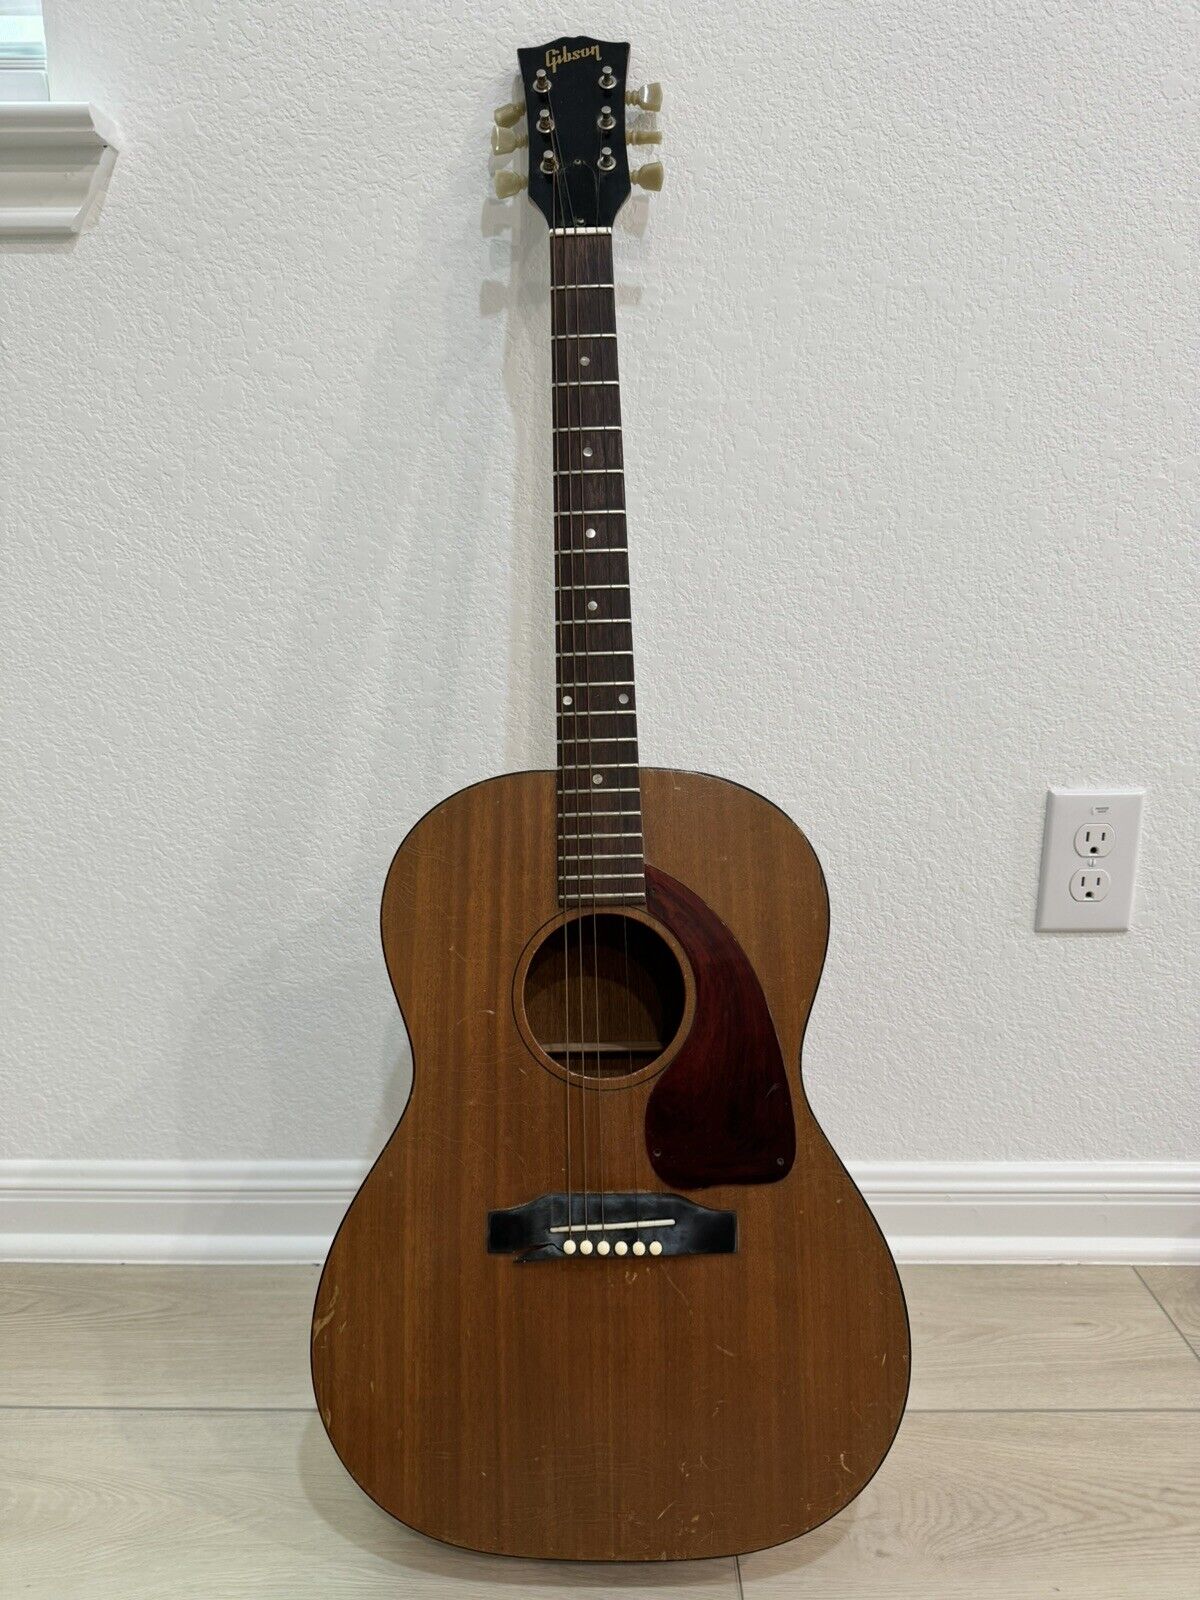 Vintage Gibson 1965 LG-0 Guitar - For Repair As Is - Serial Number 362633